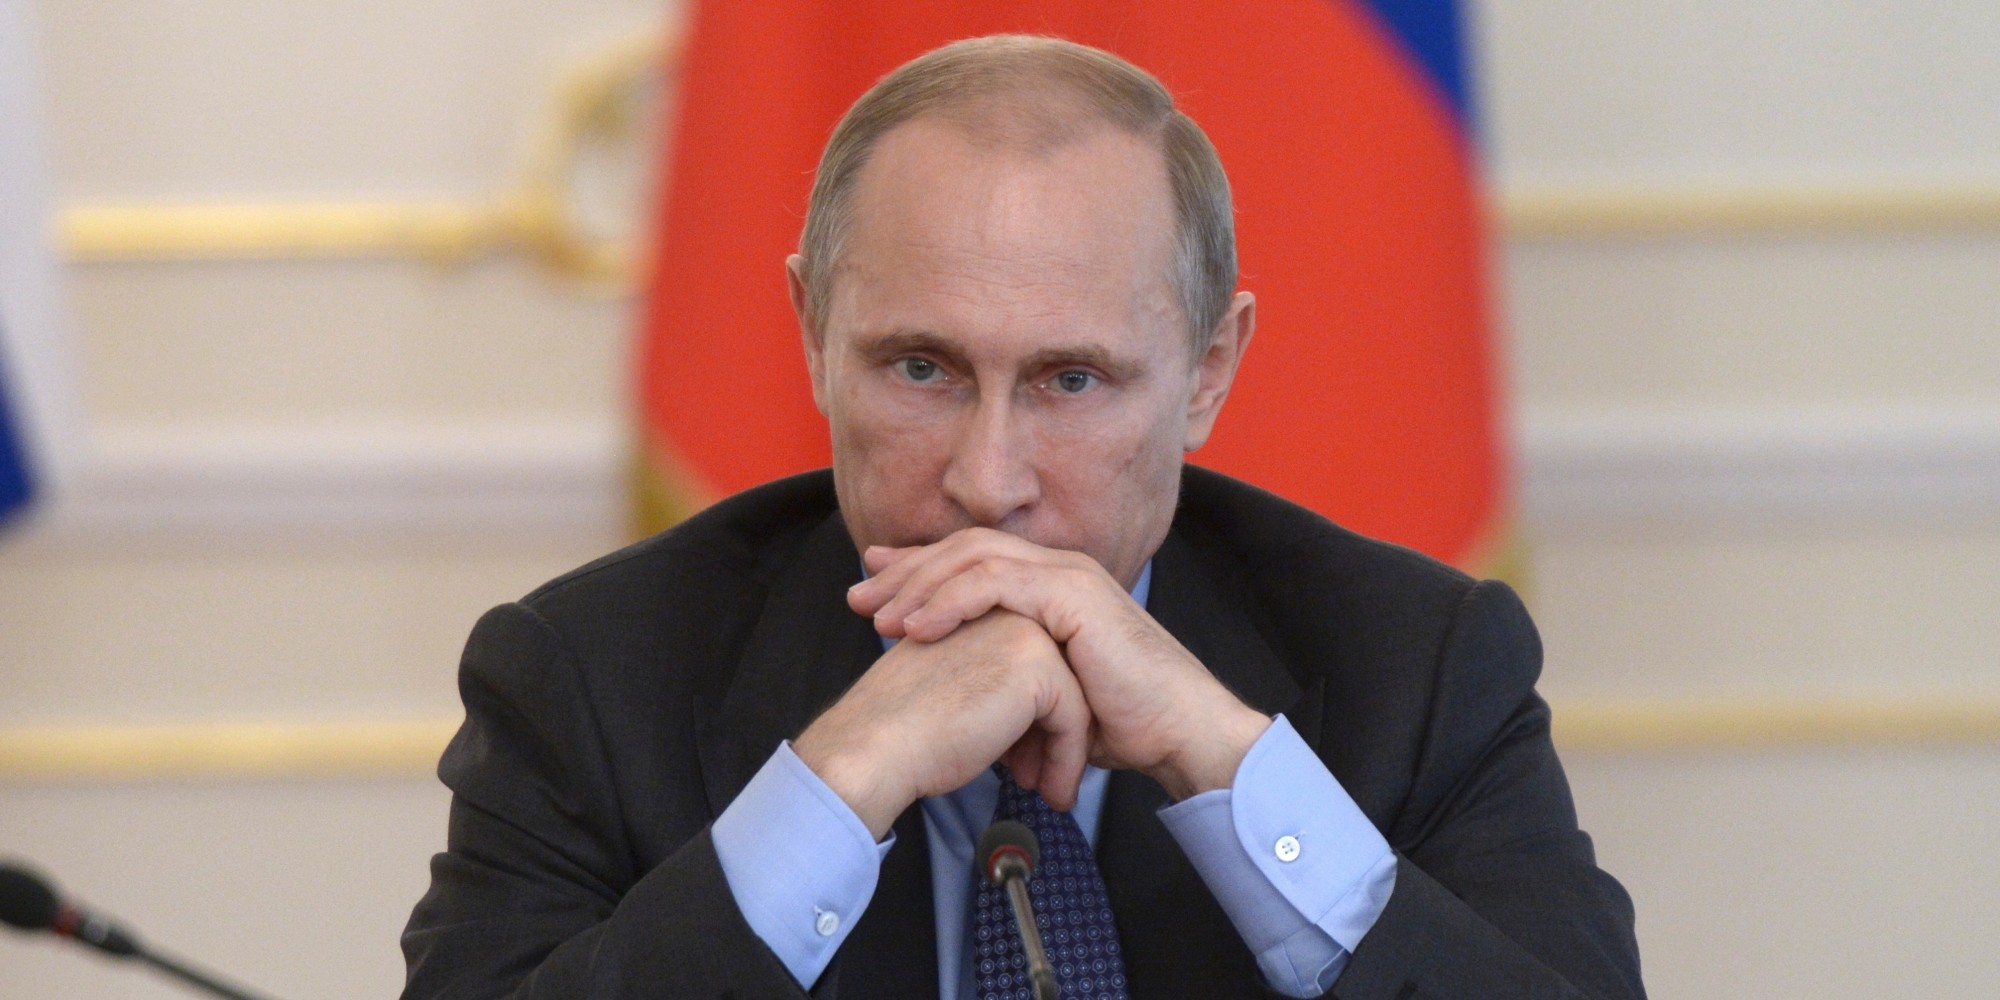 Путину - "кирдык"! Известное независимое расследование по катастрофе в Смоленске проведут британцы: Польша попросила изучить обломки Ту-154М